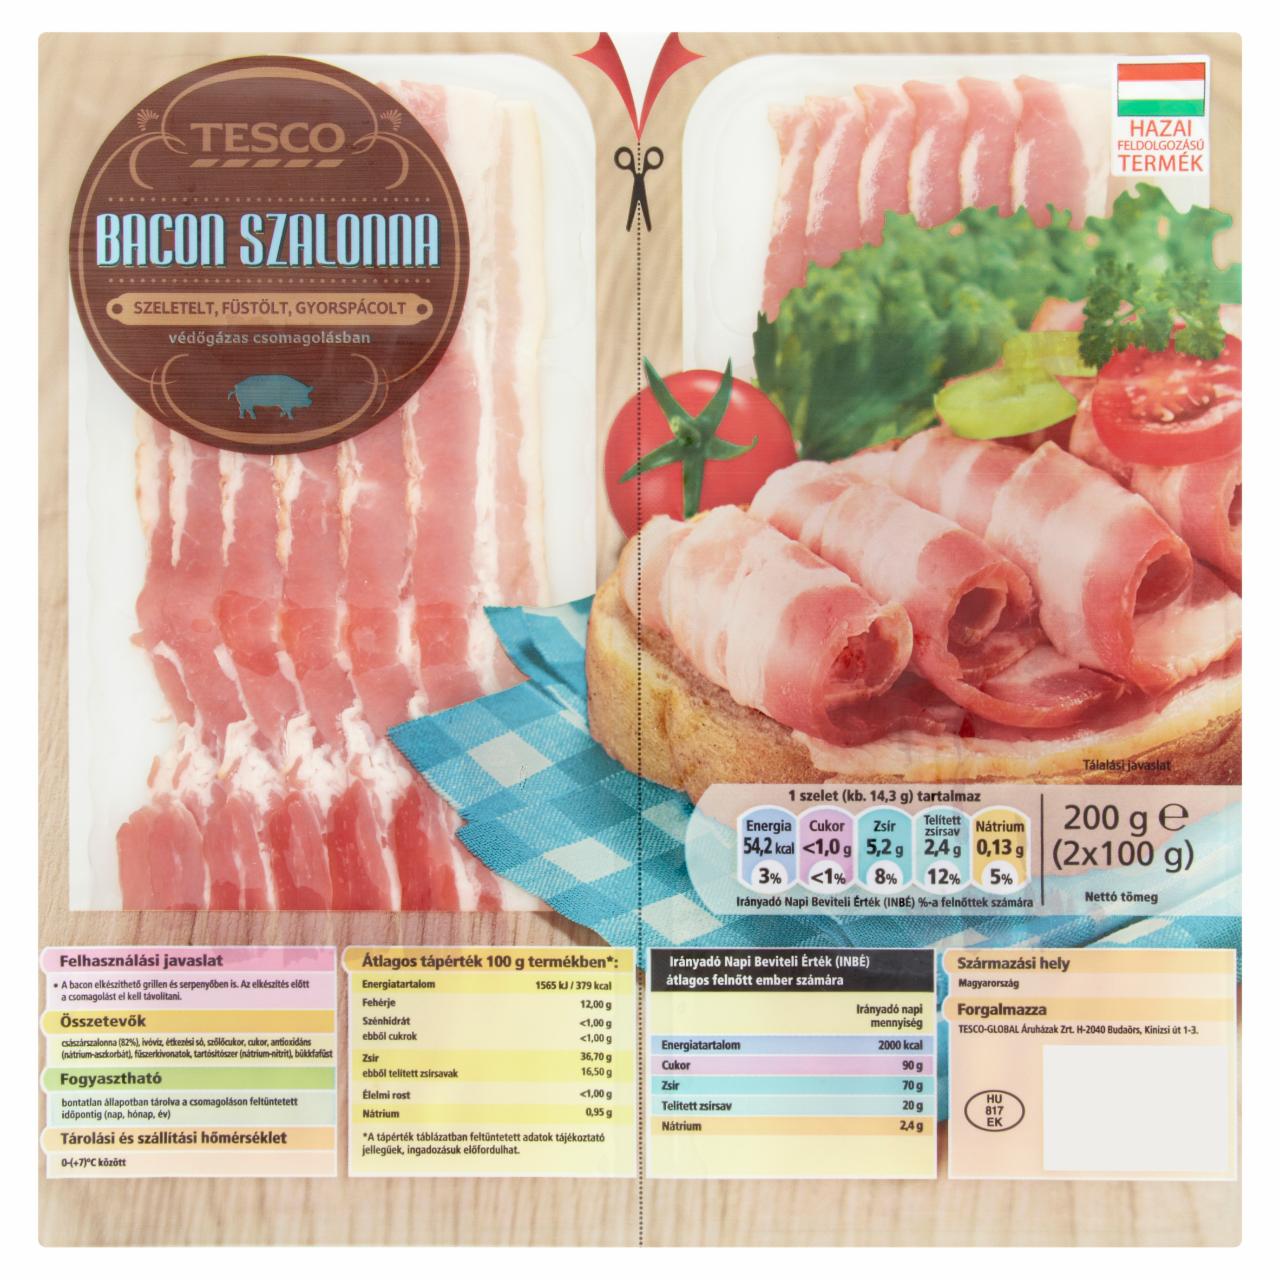 Képek - Szeletelt bacon szalonna Tesco